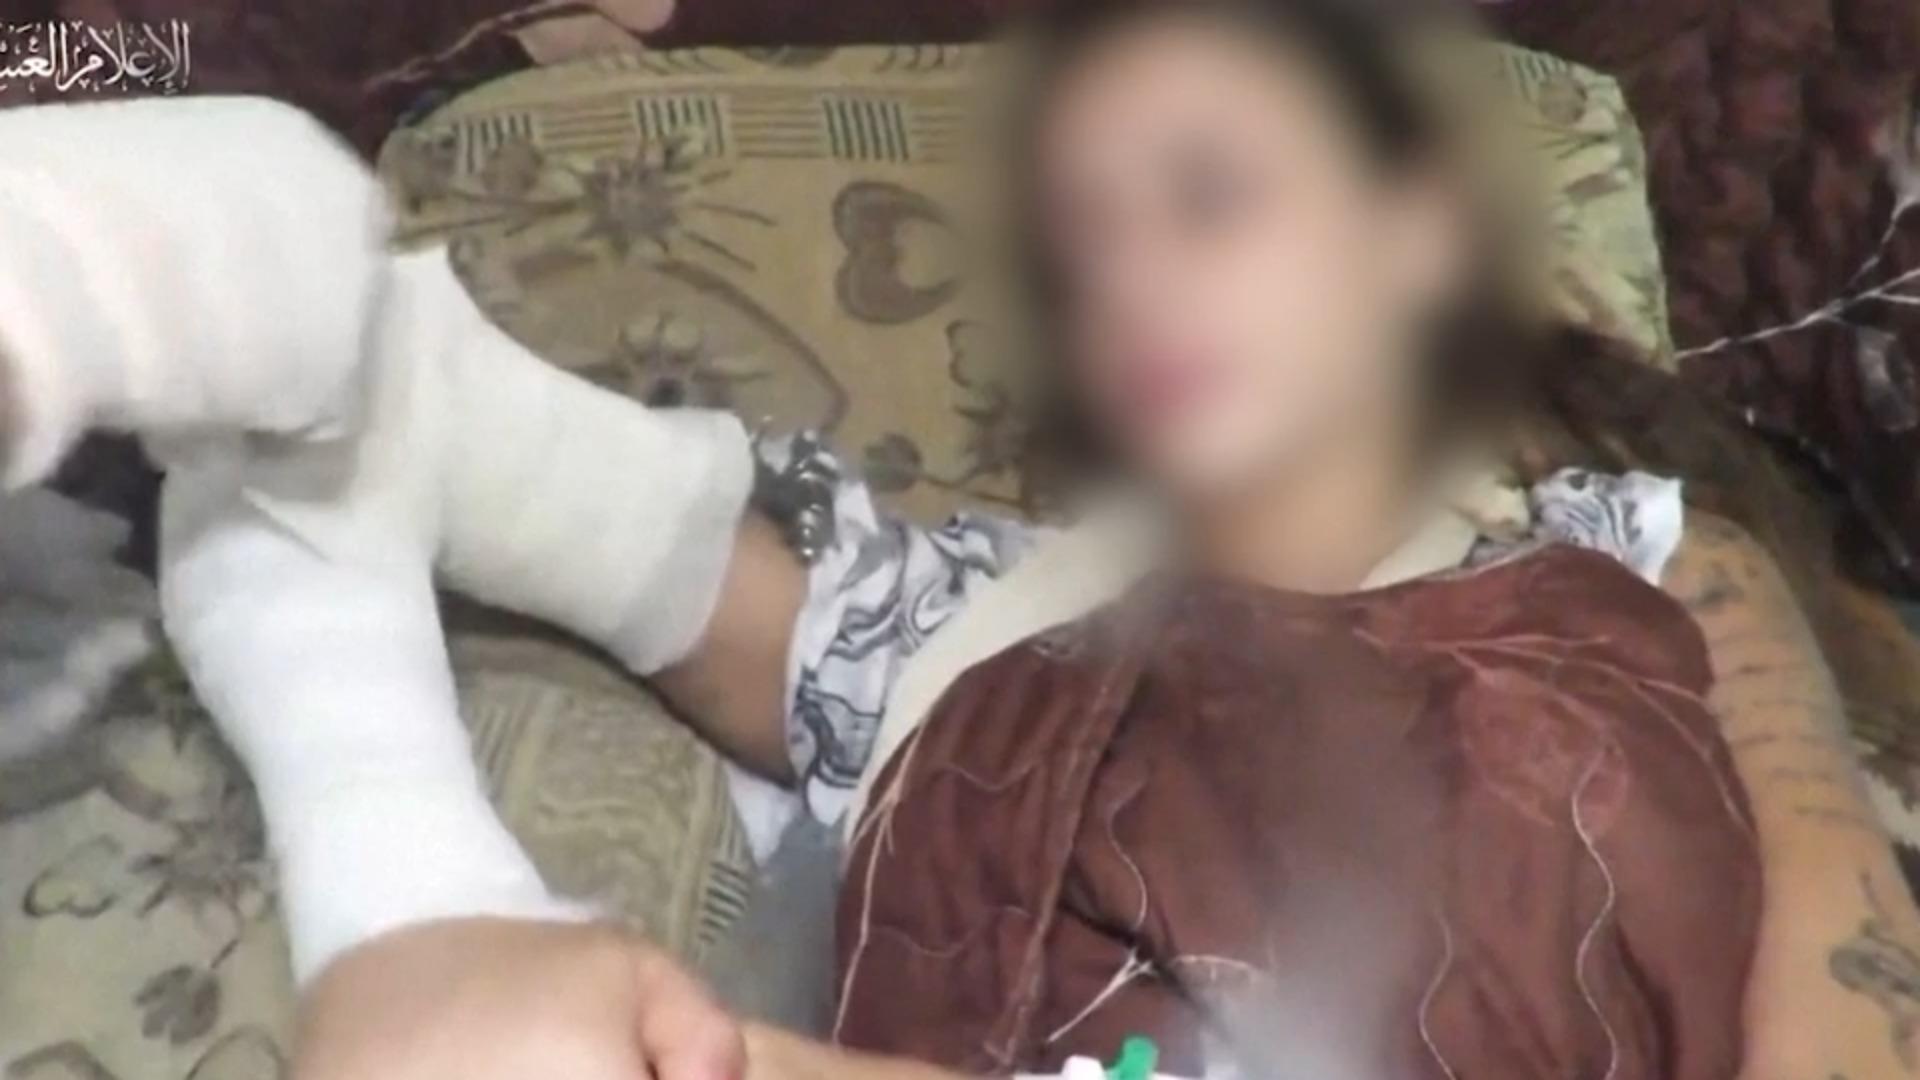 Mutter von Hamas-Geisel: „Verängstigt, aber sie lebt" Propagandavideo aufgetaucht